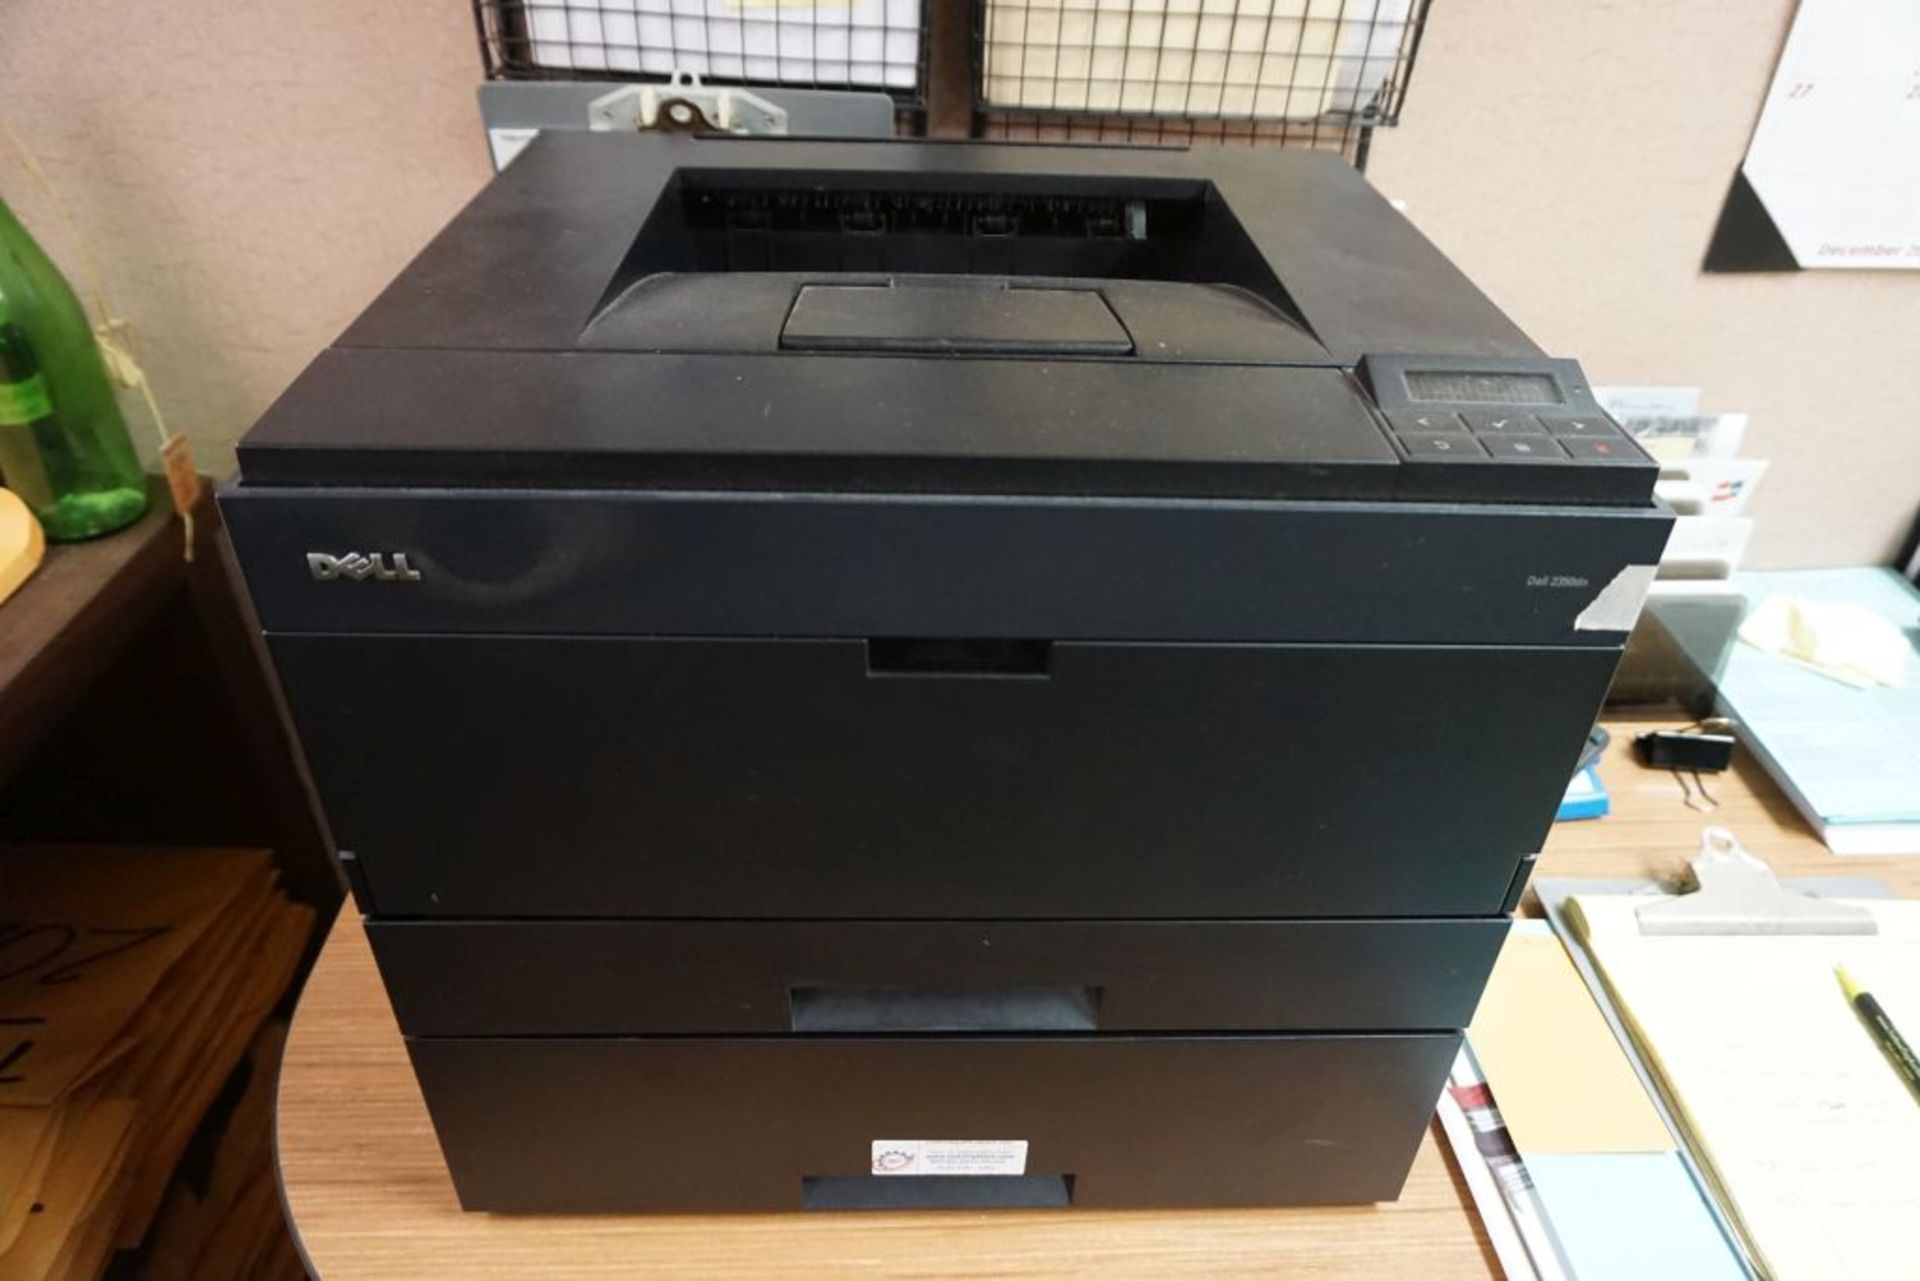 Double Tray Dell Printer | Model No. 2350dn